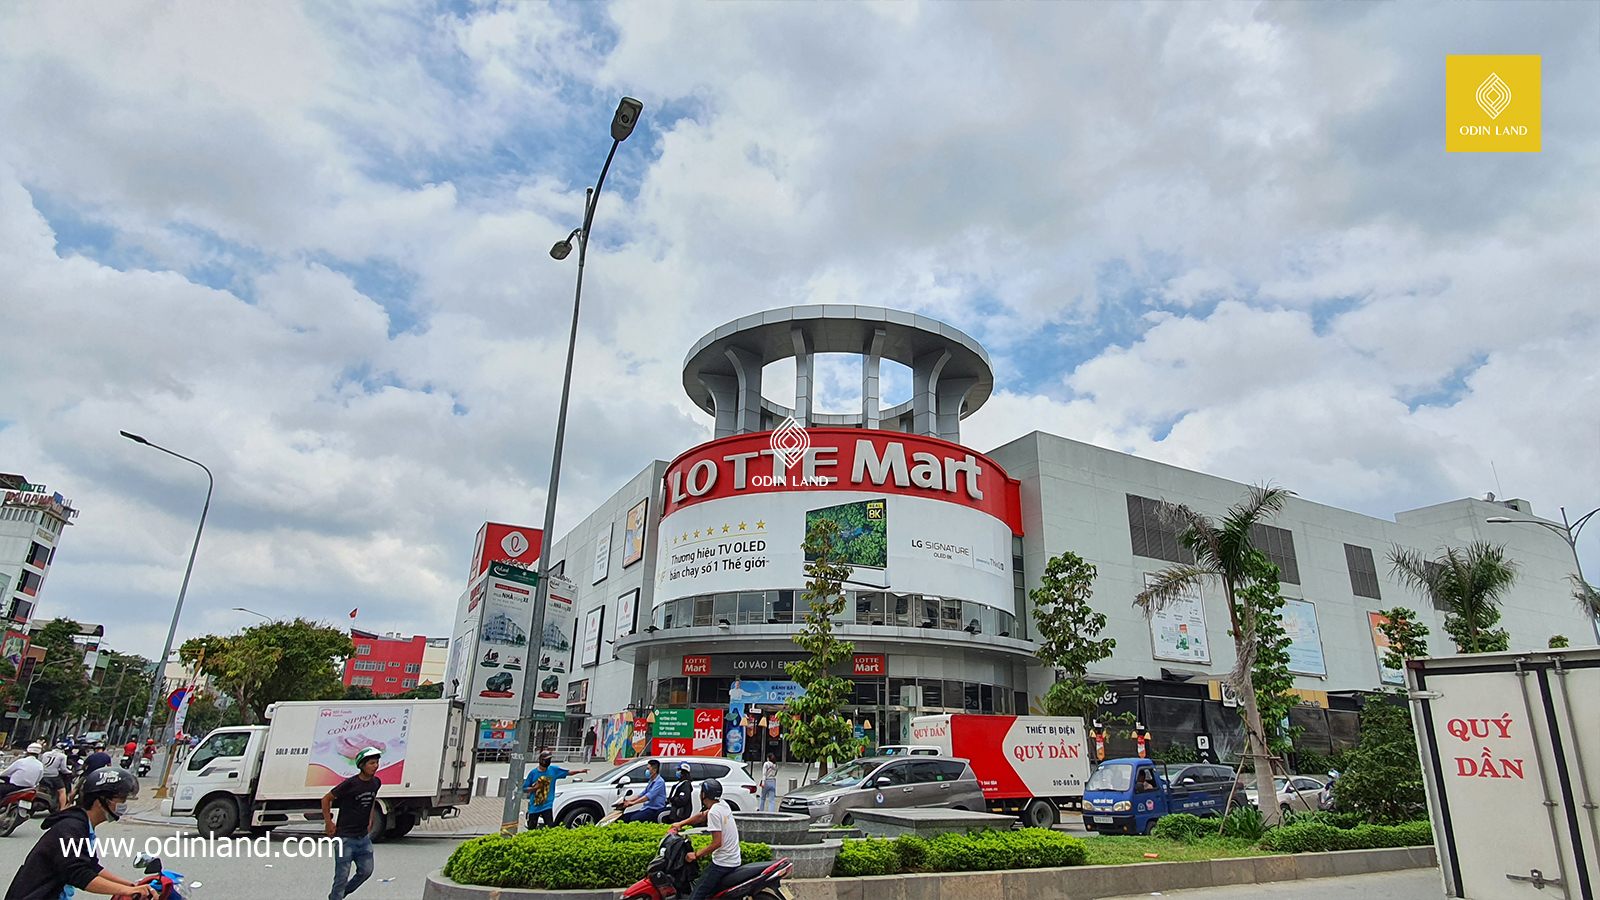 Trung tâm thương mại Lotte Mart Gò Vấp mang lại cho bạn trải nghiệm mua sắm tốt nhất với một loạt các sản phẩm chất lượng, giá cả hợp lý và các dịch vụ chăm sóc khách hàng tuyệt vời. Chỉ cần một bước chân, bạn đã đến được trung tâm mua sắm lớn nhất của thành phố.